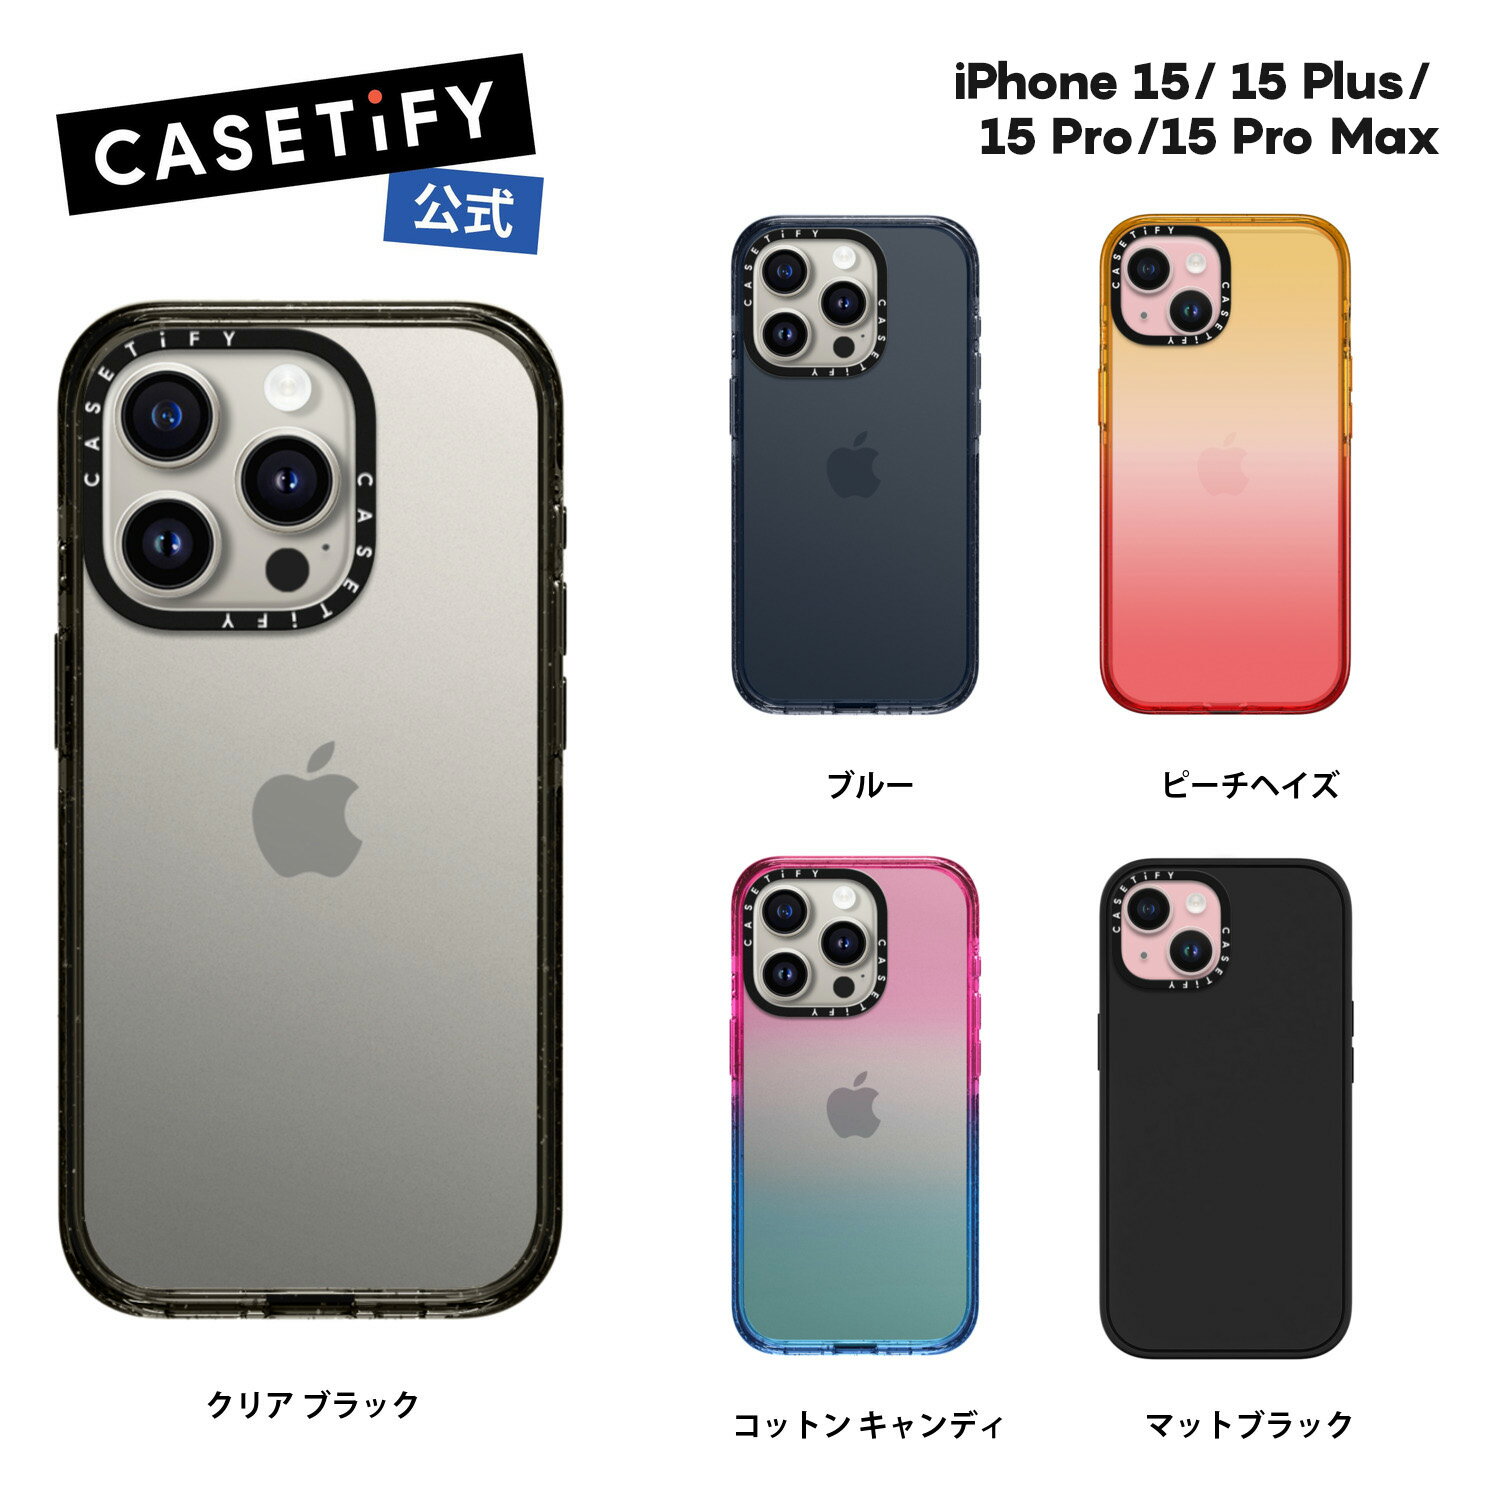 【公式】CASETiFY iPhone 15 iPhone 15Pro iPhone 15Pro Max iPhone 15Plus インパクトケース 耐衝撃 保護ケース 透明 クリア ブラック マットブラック ブルー コットン キャンディ ピーチヘイ…